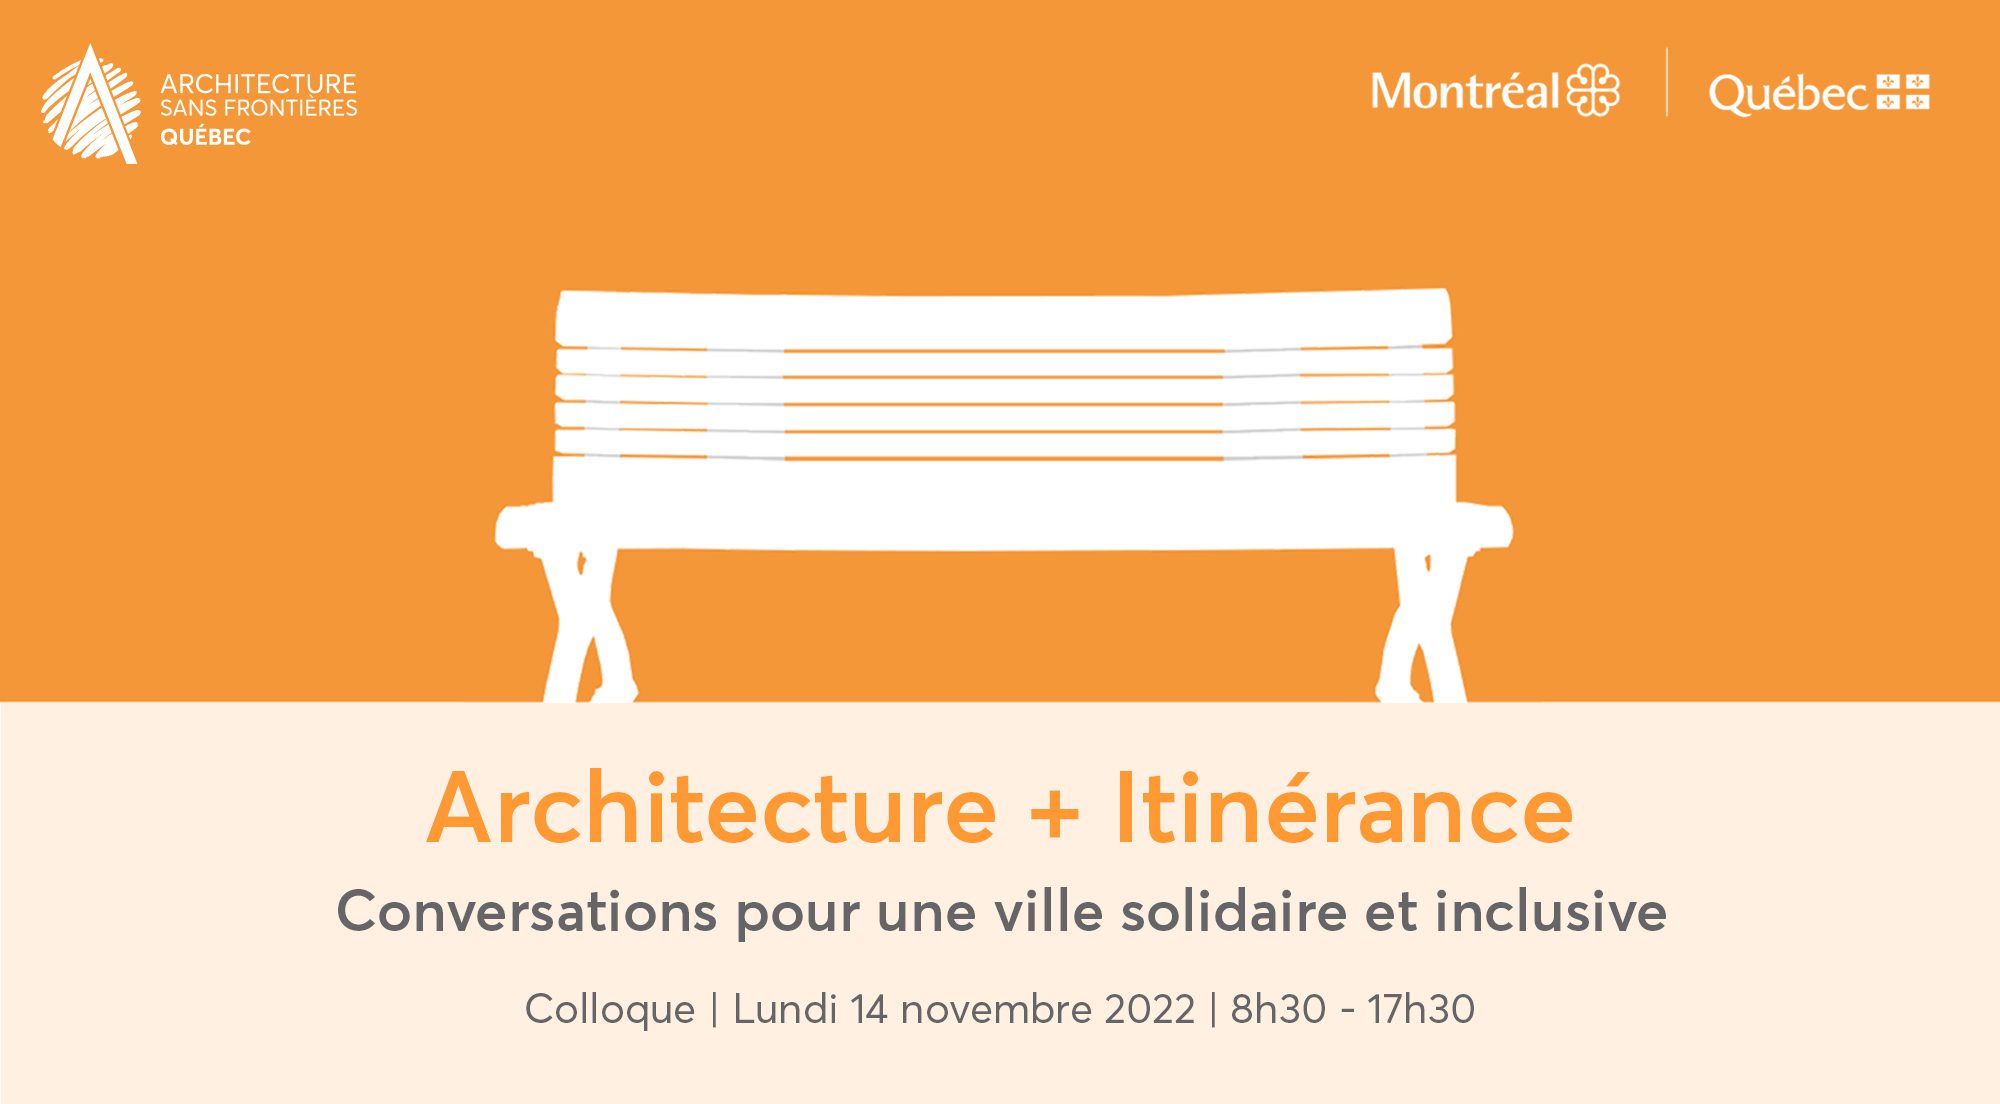 COLLOQUE | Architecture + itinérance : Conversations pour une ville solidaire et inclusive | 14 novembre